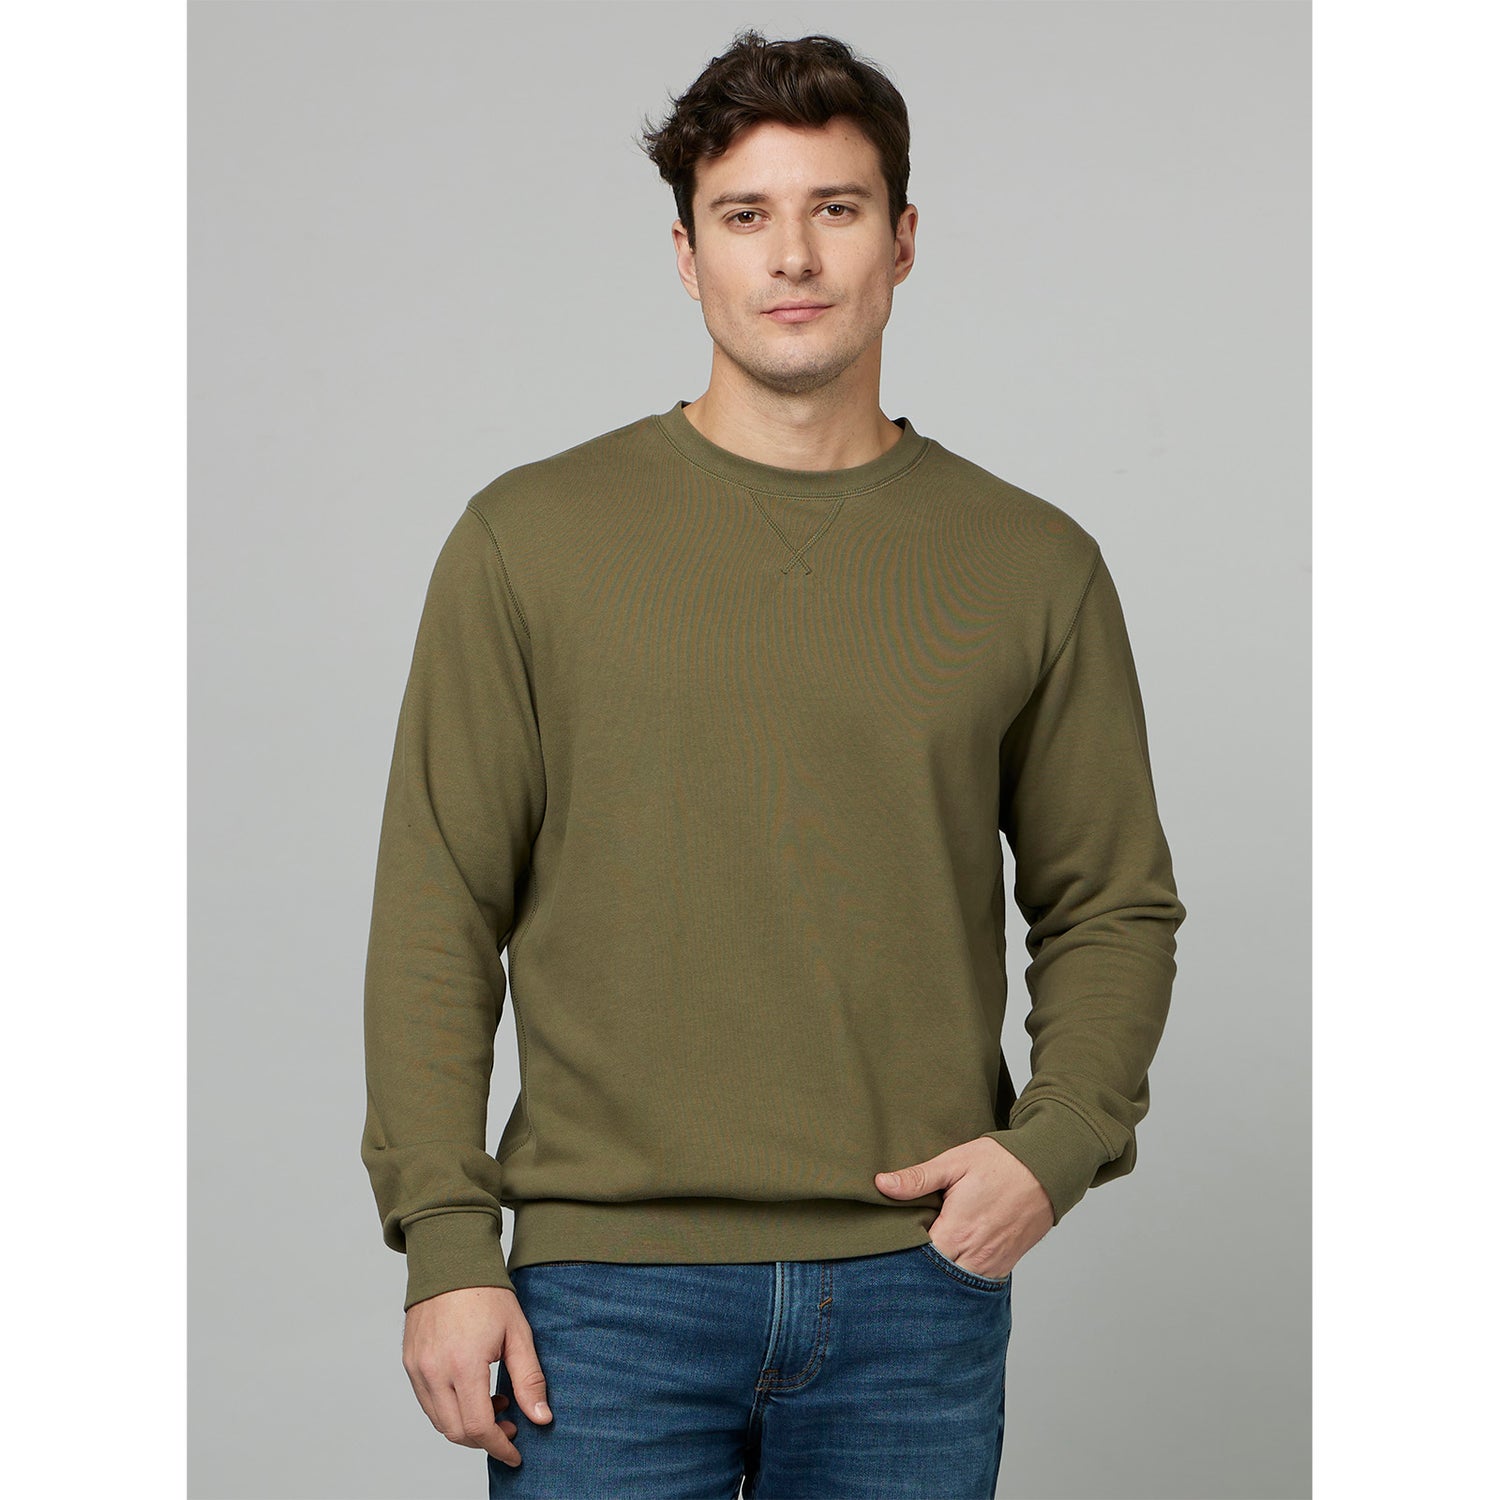 Khaki Round Neck Cotton Pullover Sweatshirt (FESEVEN)